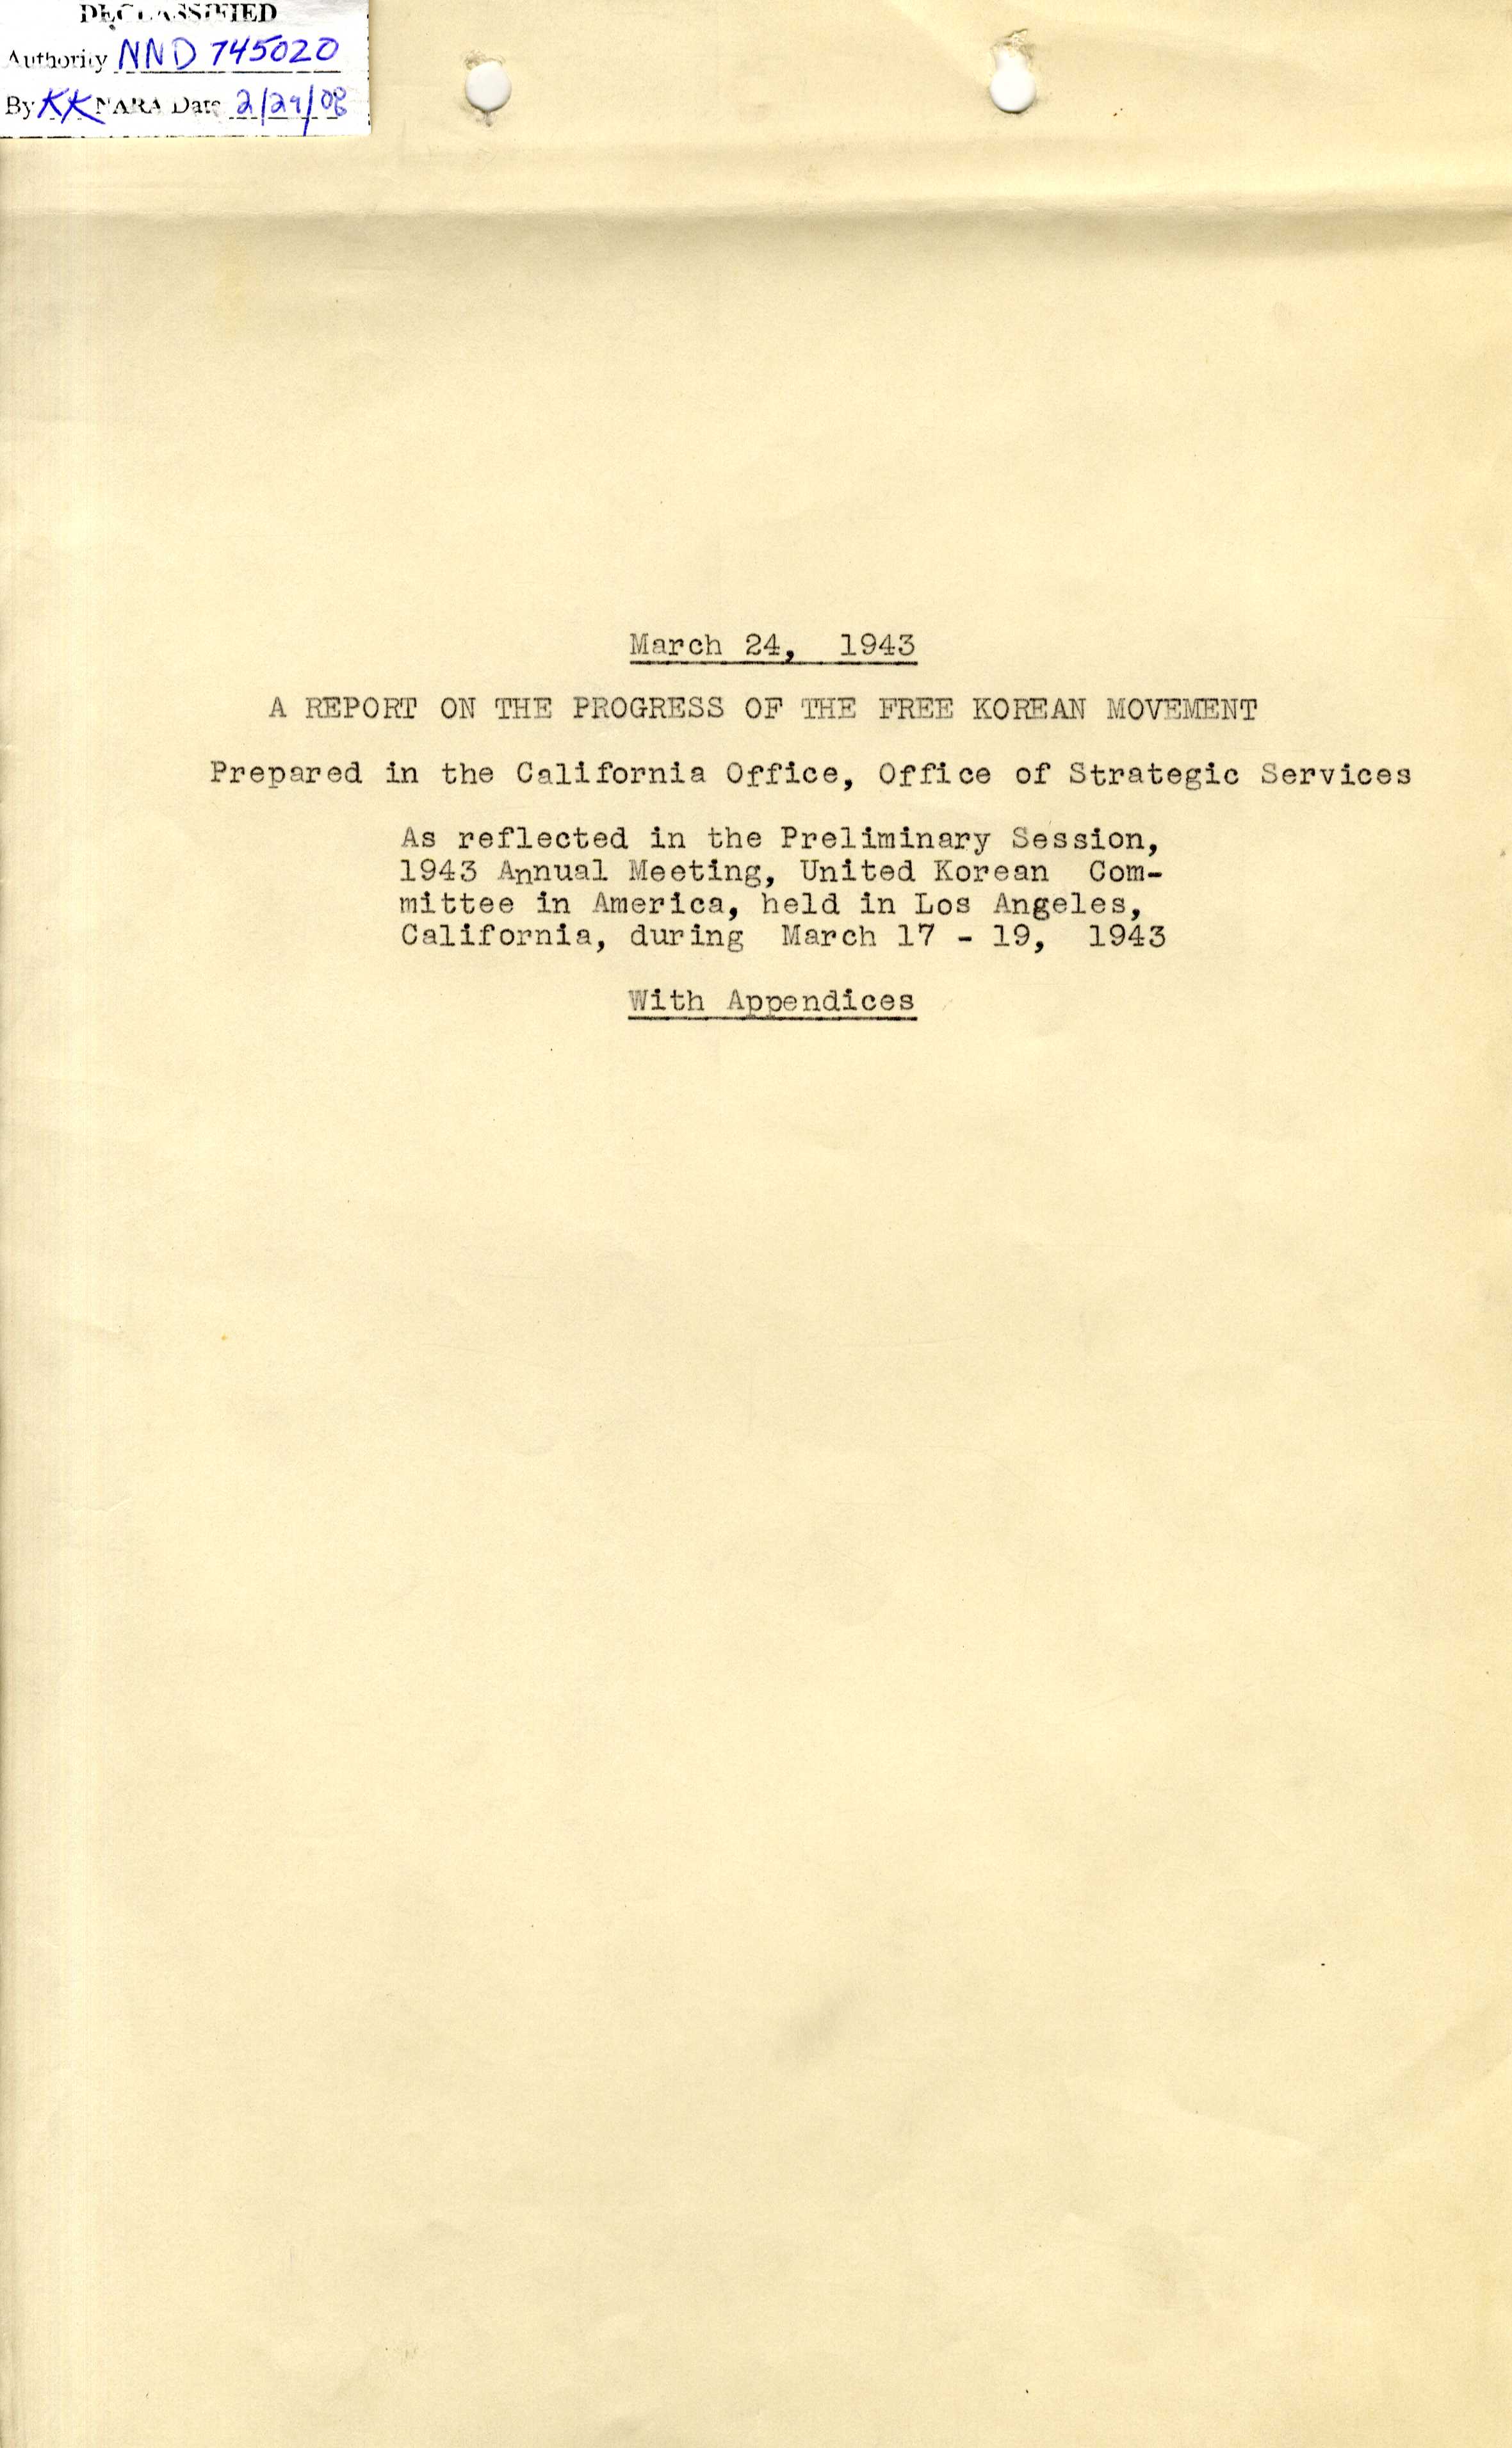 아 지부, 1943년 3월 17-19일 캘리포니아 로스앤젤레스에서 개최된 재미한족연합위원회 1943년 연차대회 예비회의에서 나타난 자유한인운동의 전개에 대한 보고서, 개요 및 결론